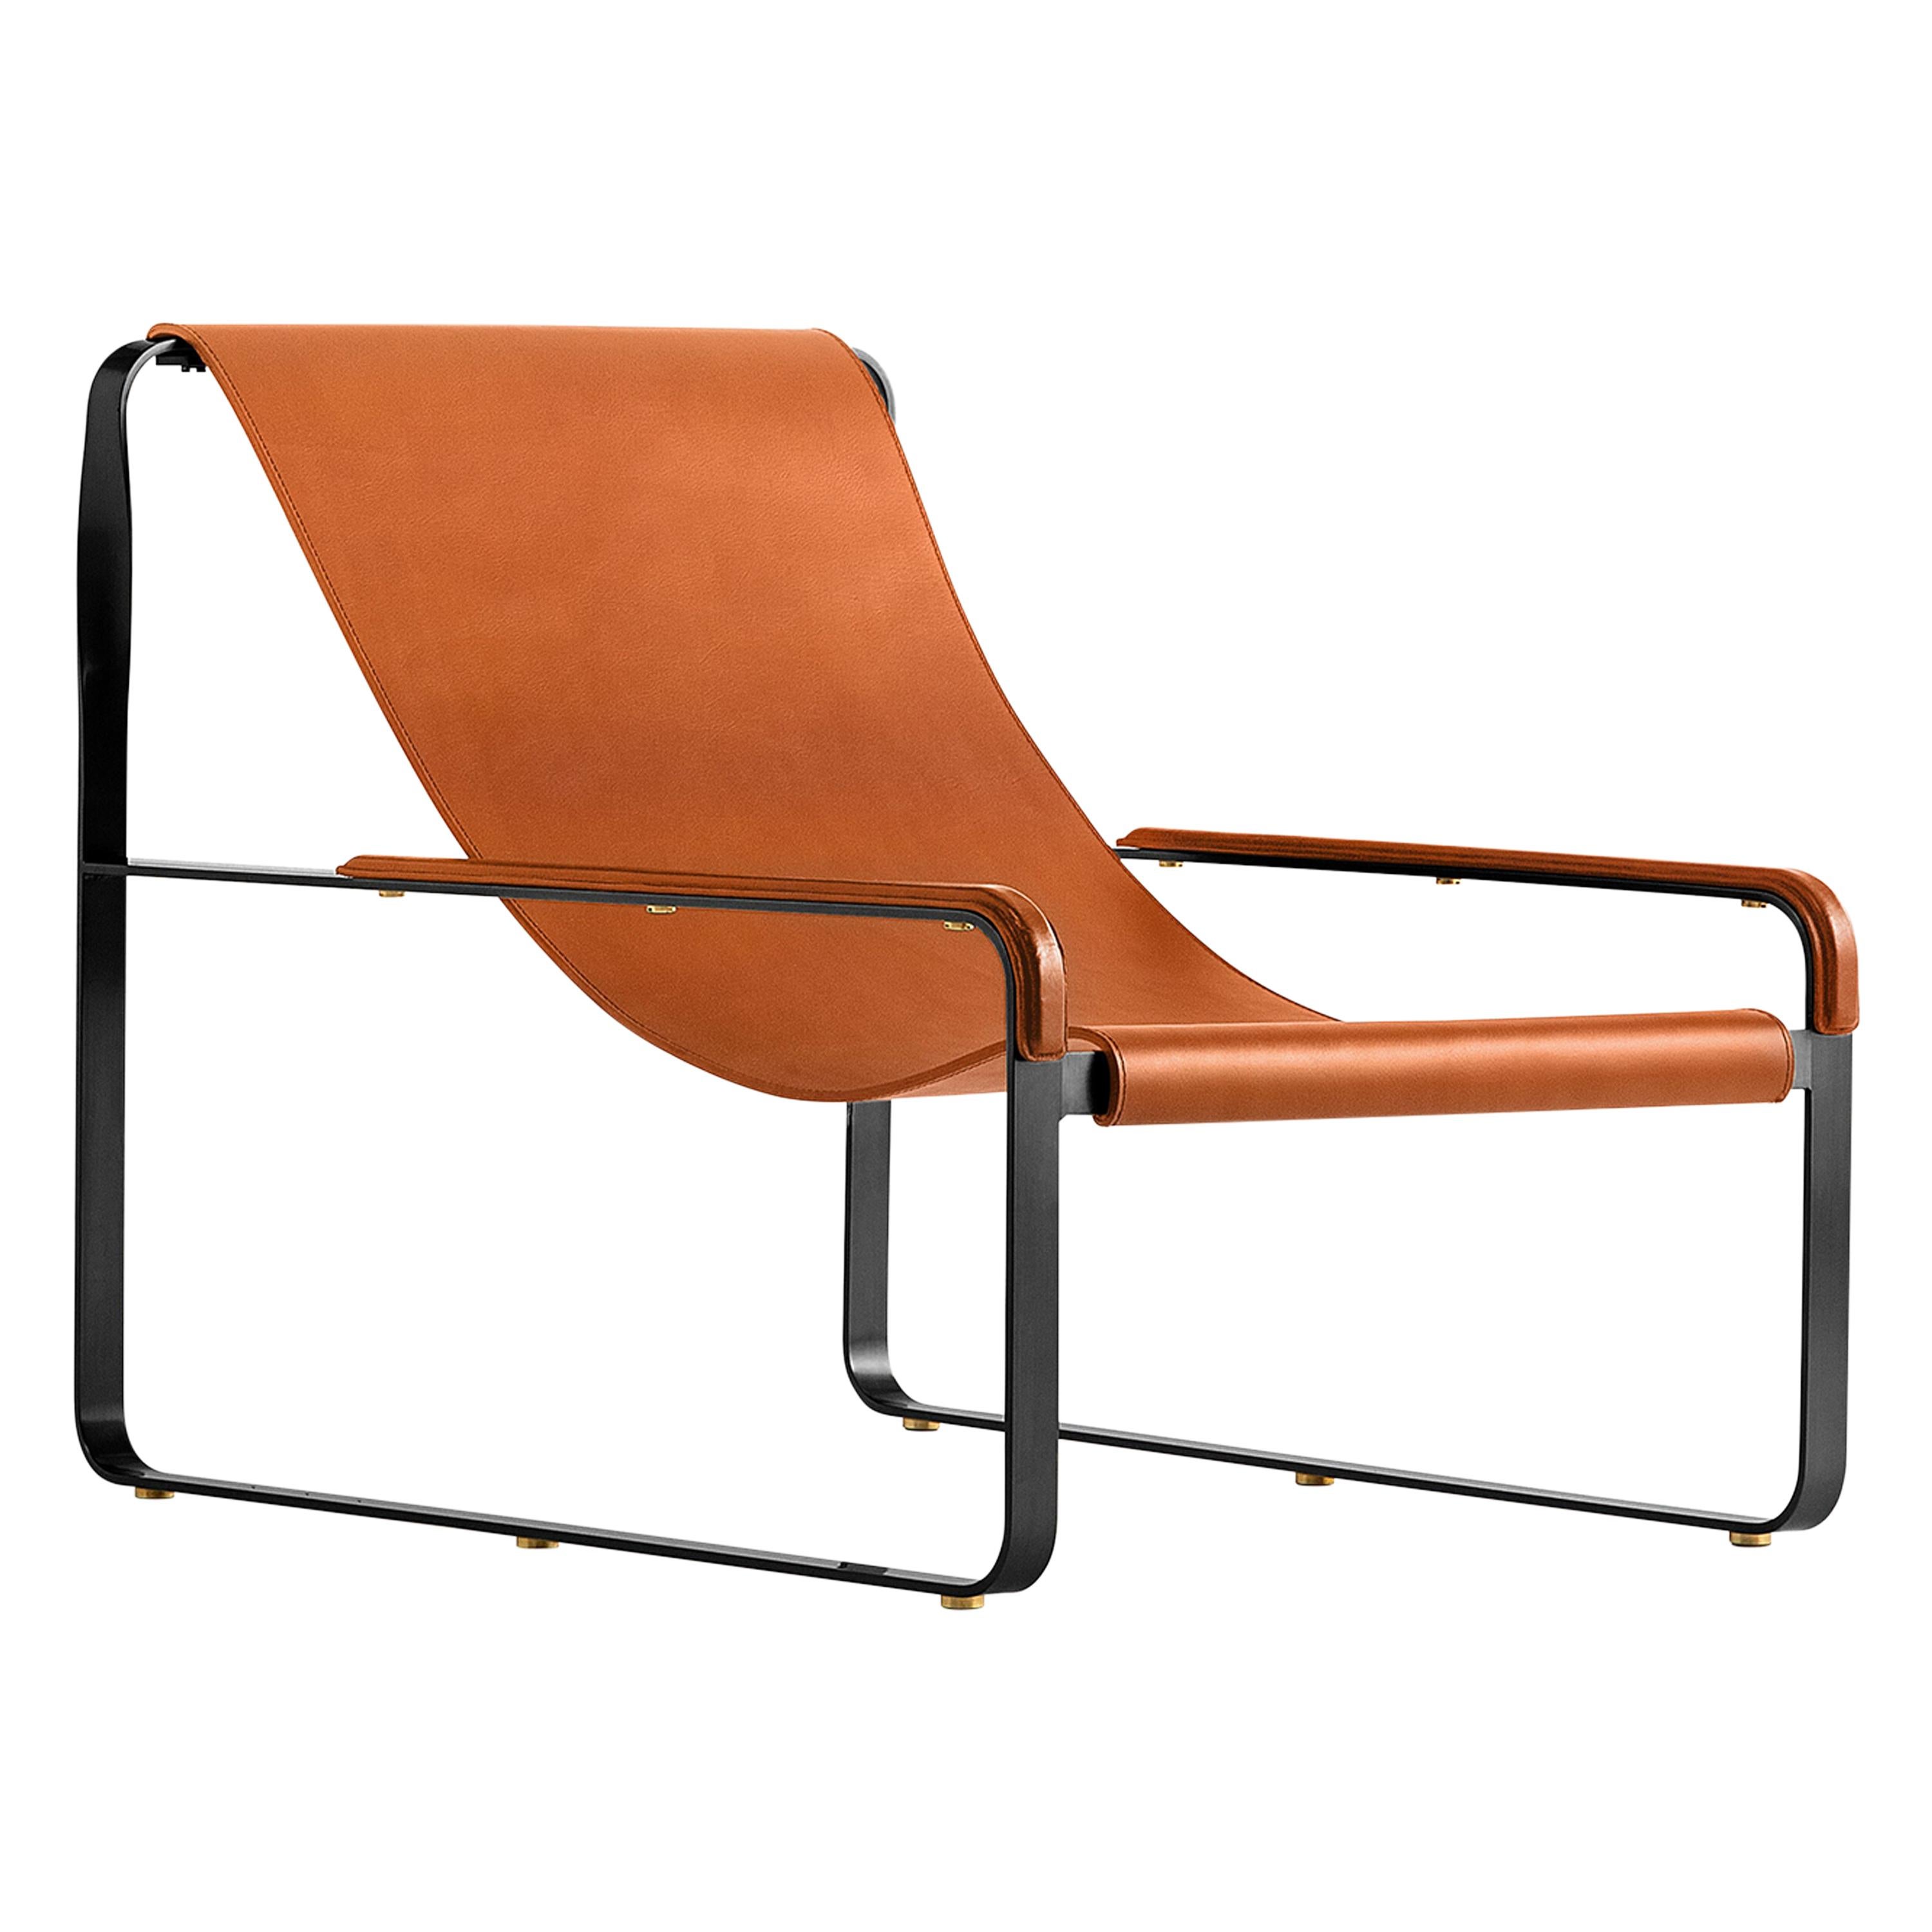 Zeitgenössisches minimalistisches Chaiselongue-Sessel aus schwarzem Stahl und natürlichem braunem Tabakleder